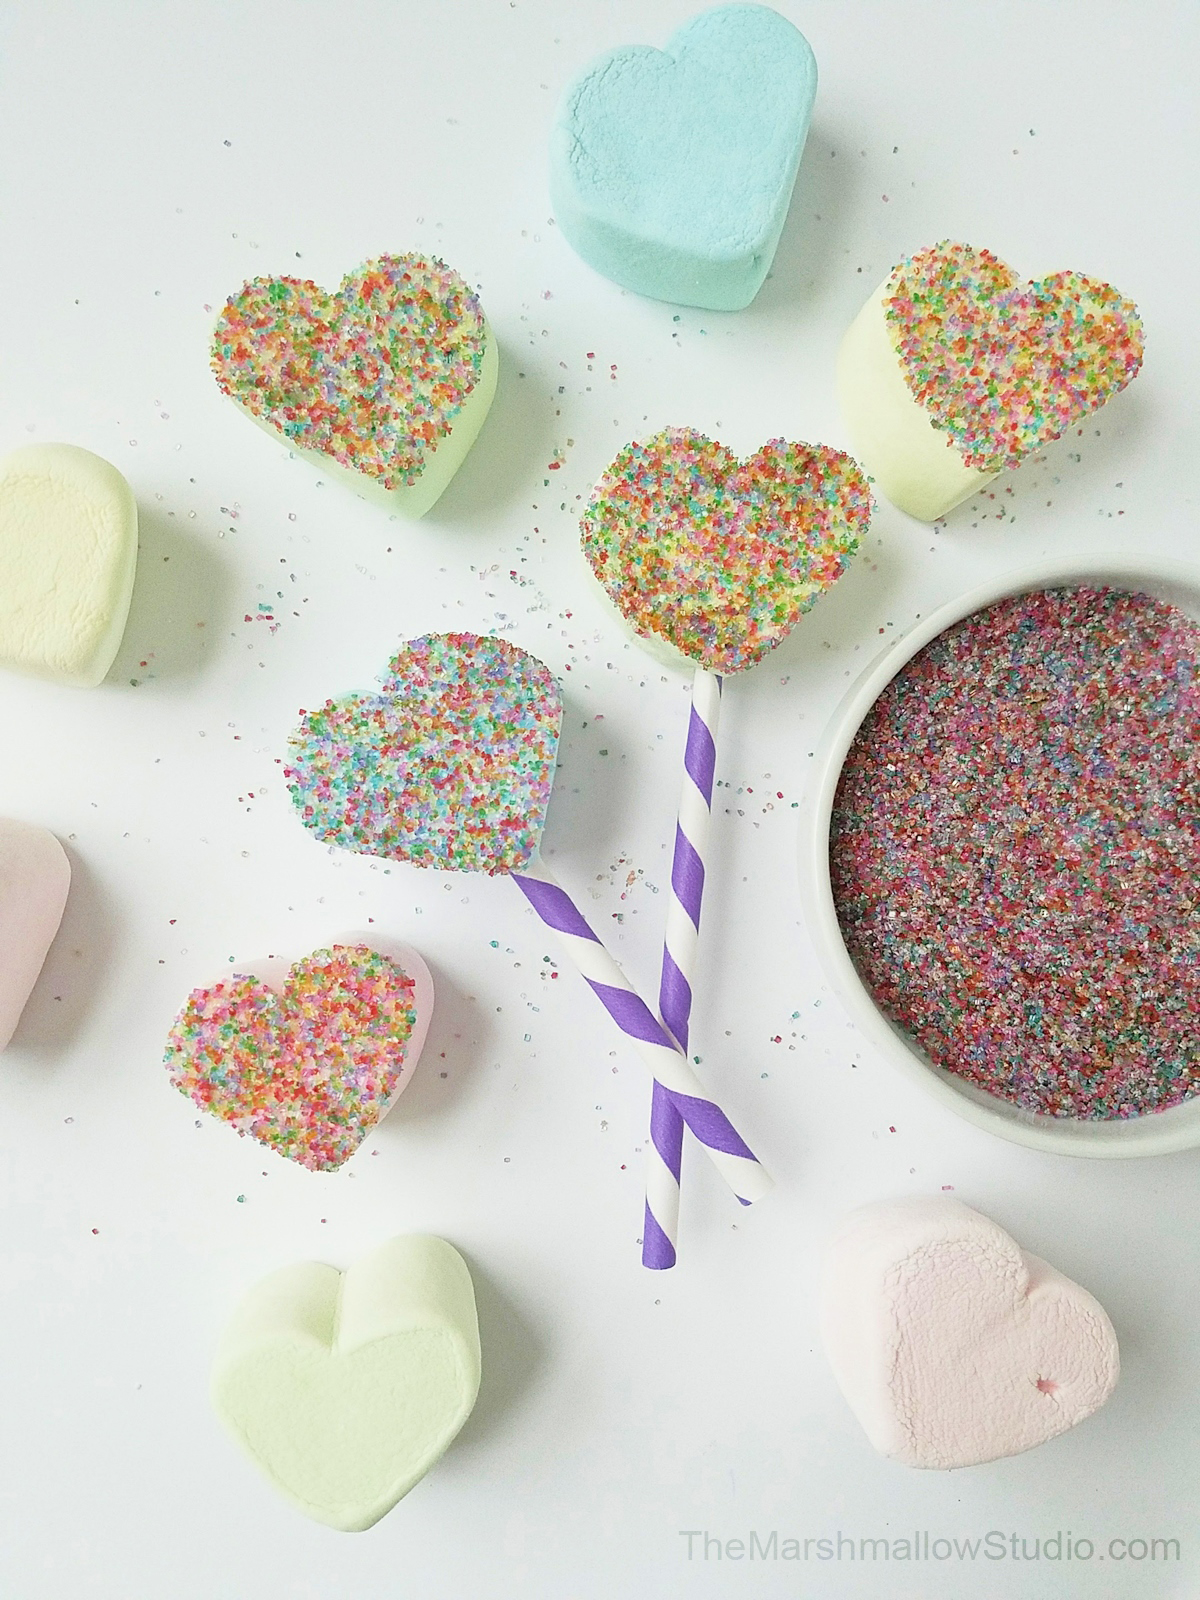 4 fun DIYs with Jumbo HeartMallows Conversation Hearts by The Marshmallow Studio1